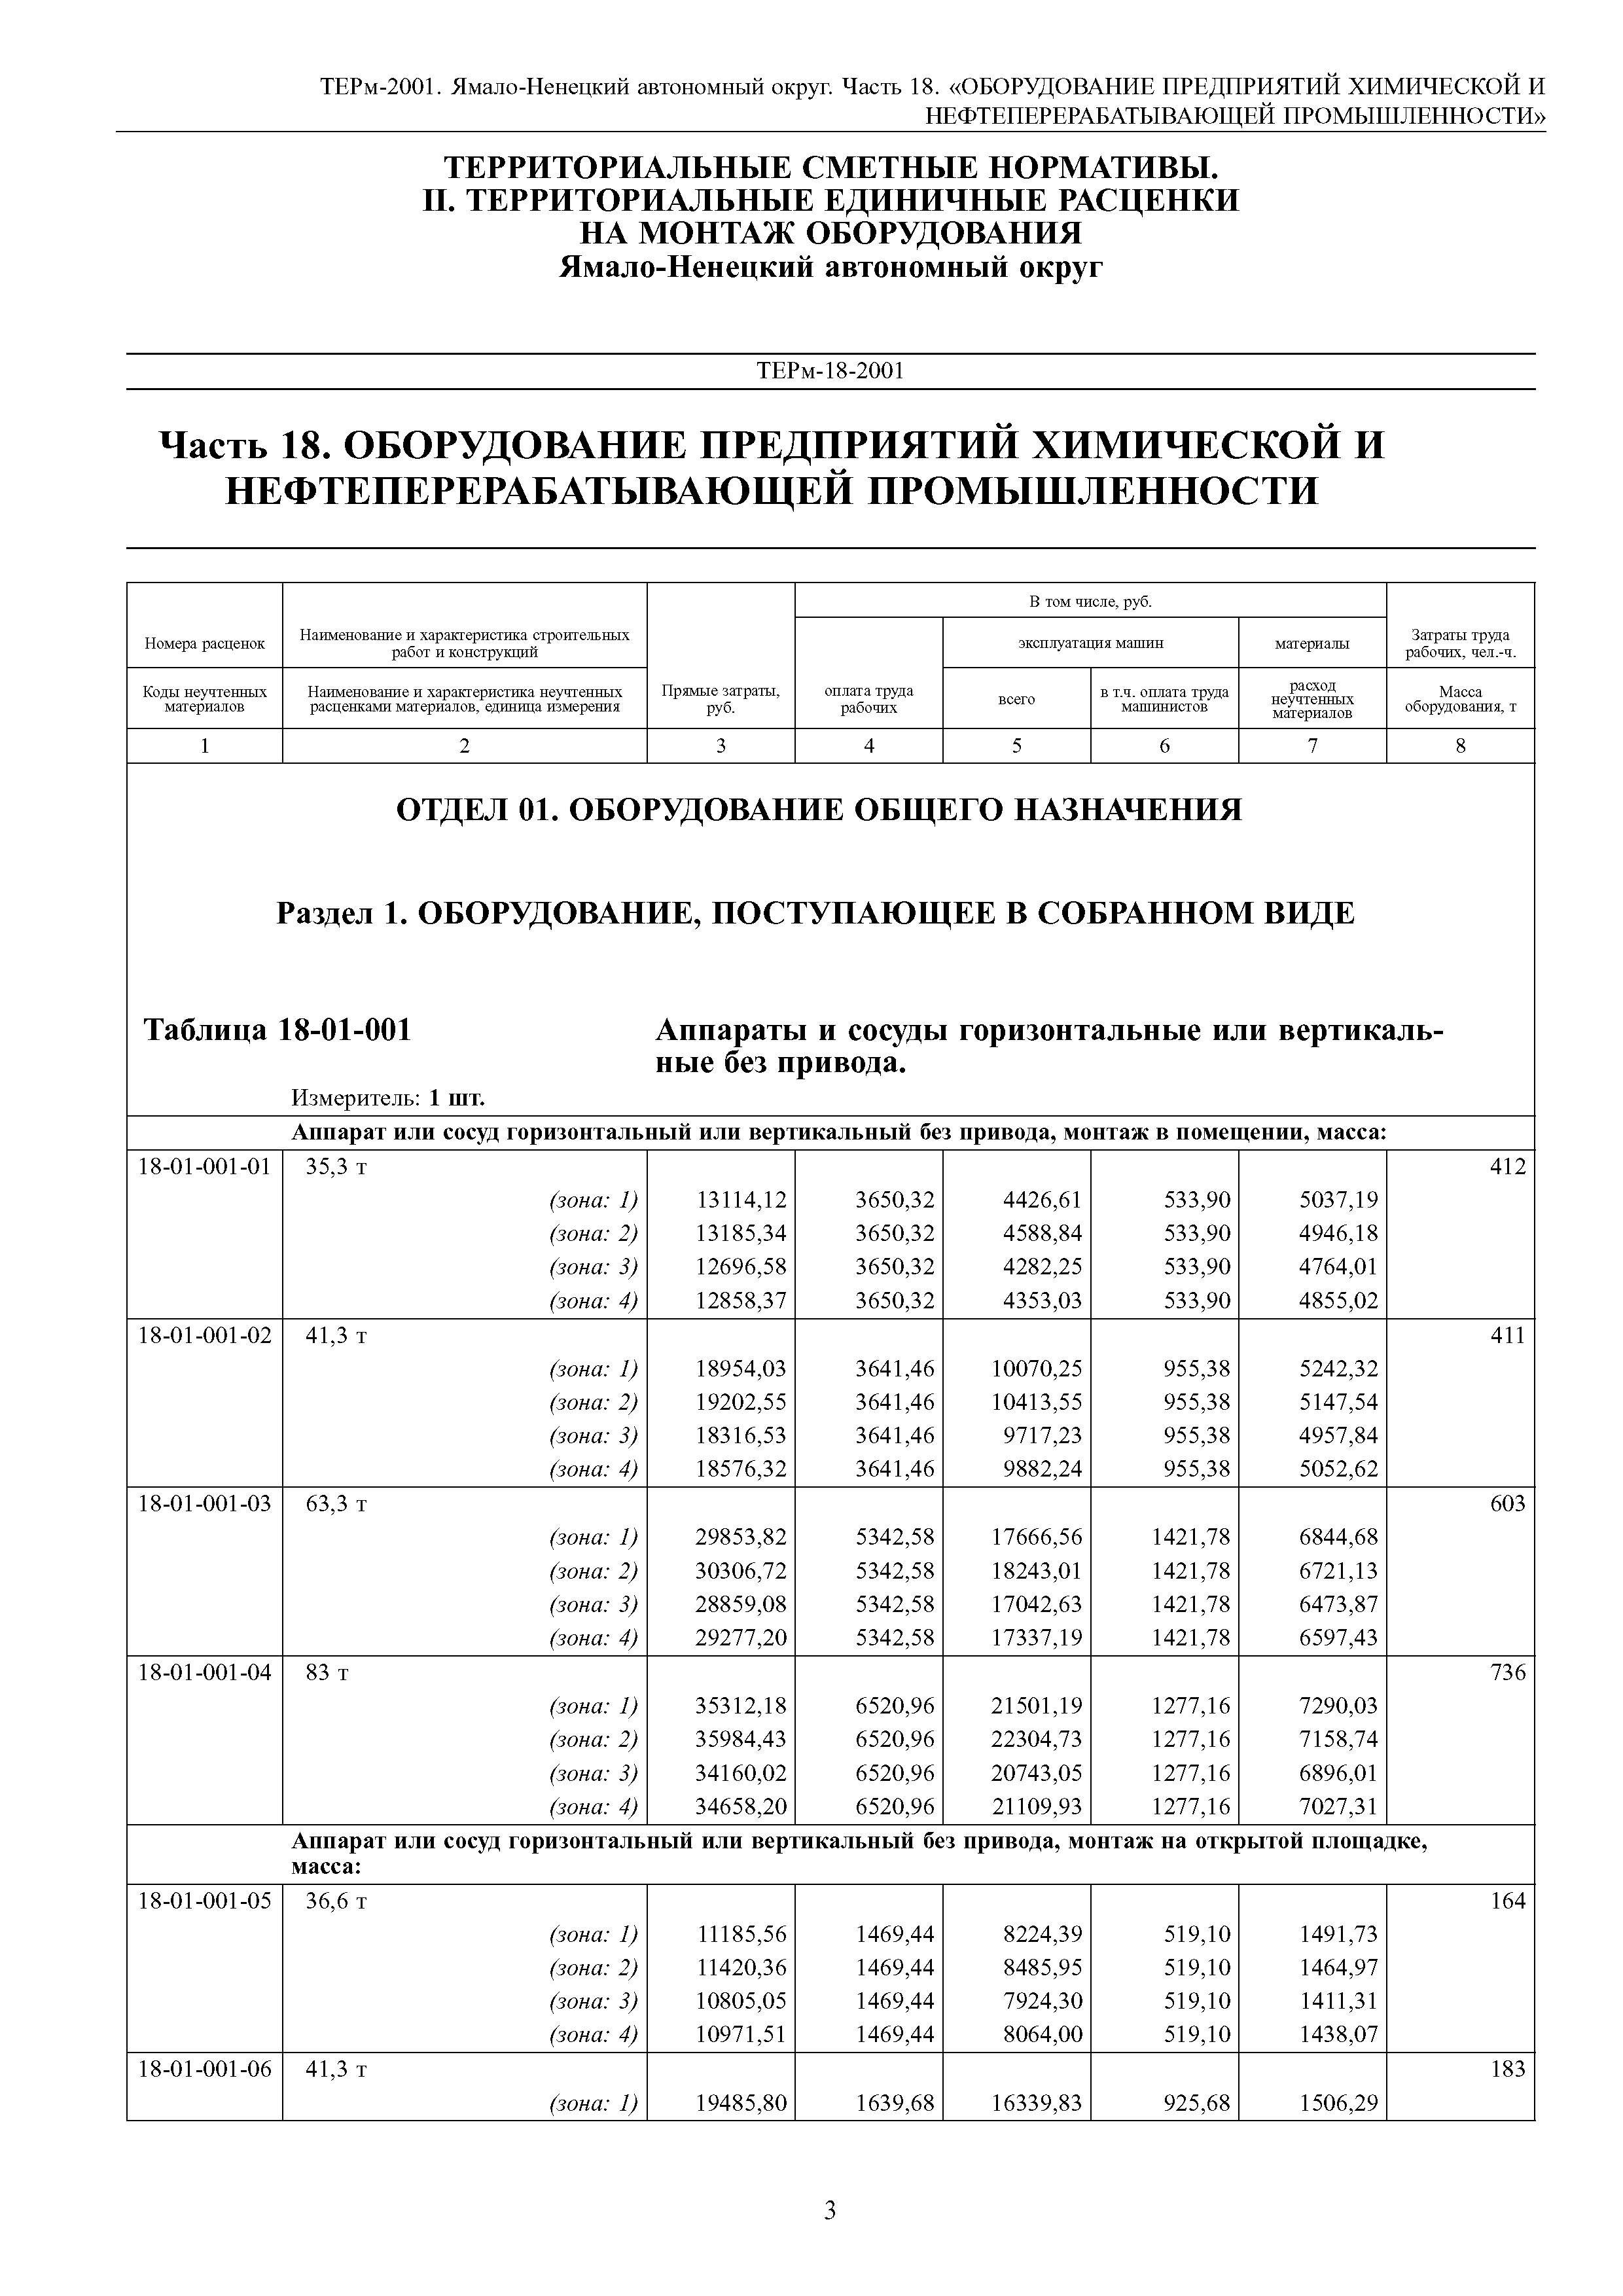 ТЕРм Ямало-Ненецкий автономный округ 18-2001